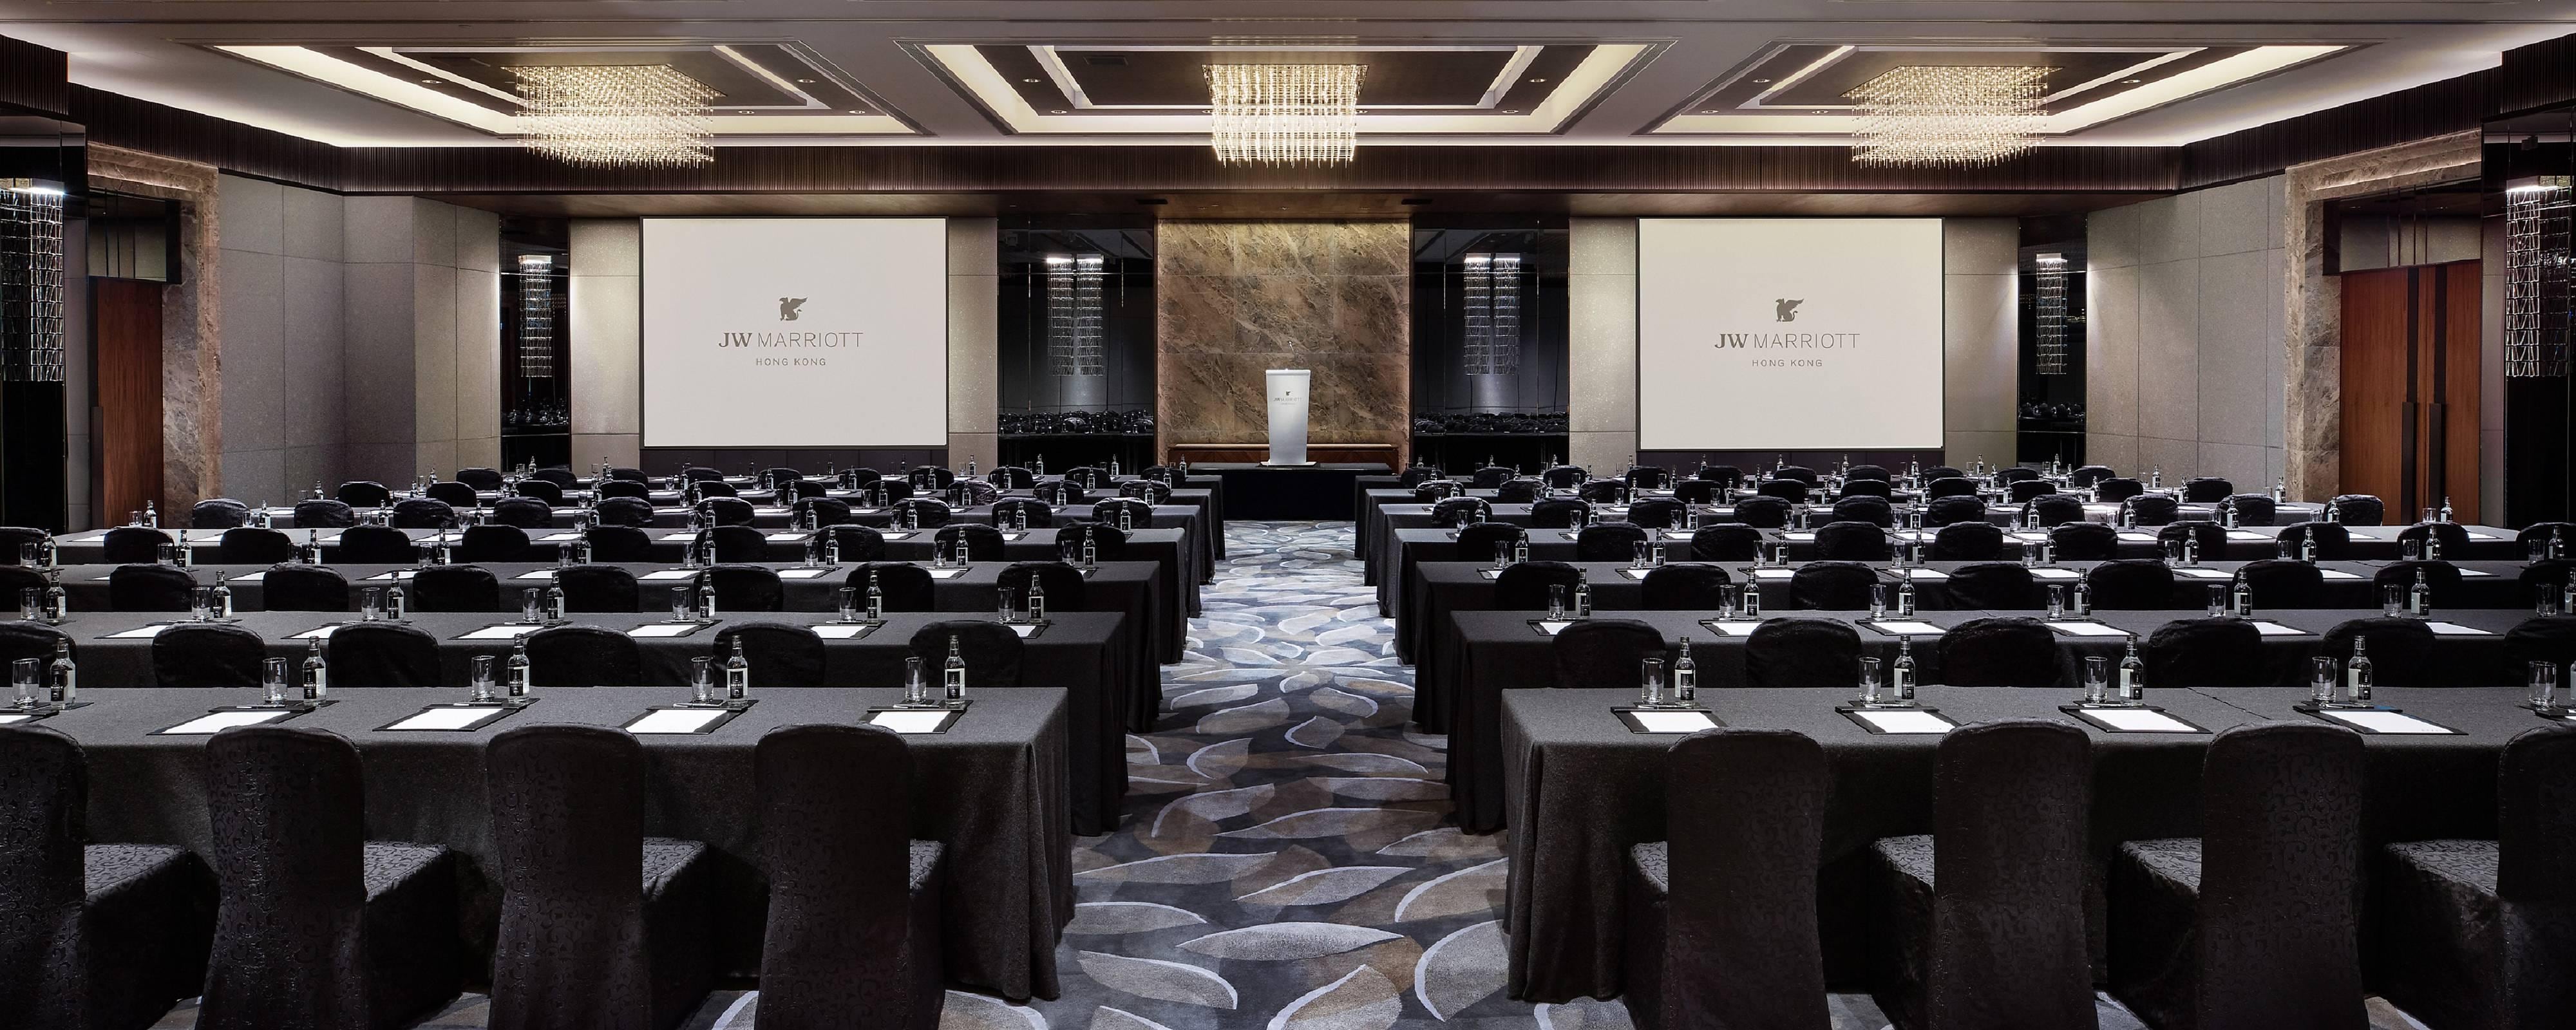 Conference Rooms Hong Kong - Meeting Venues | JW Marriott Hotel Hong Kong